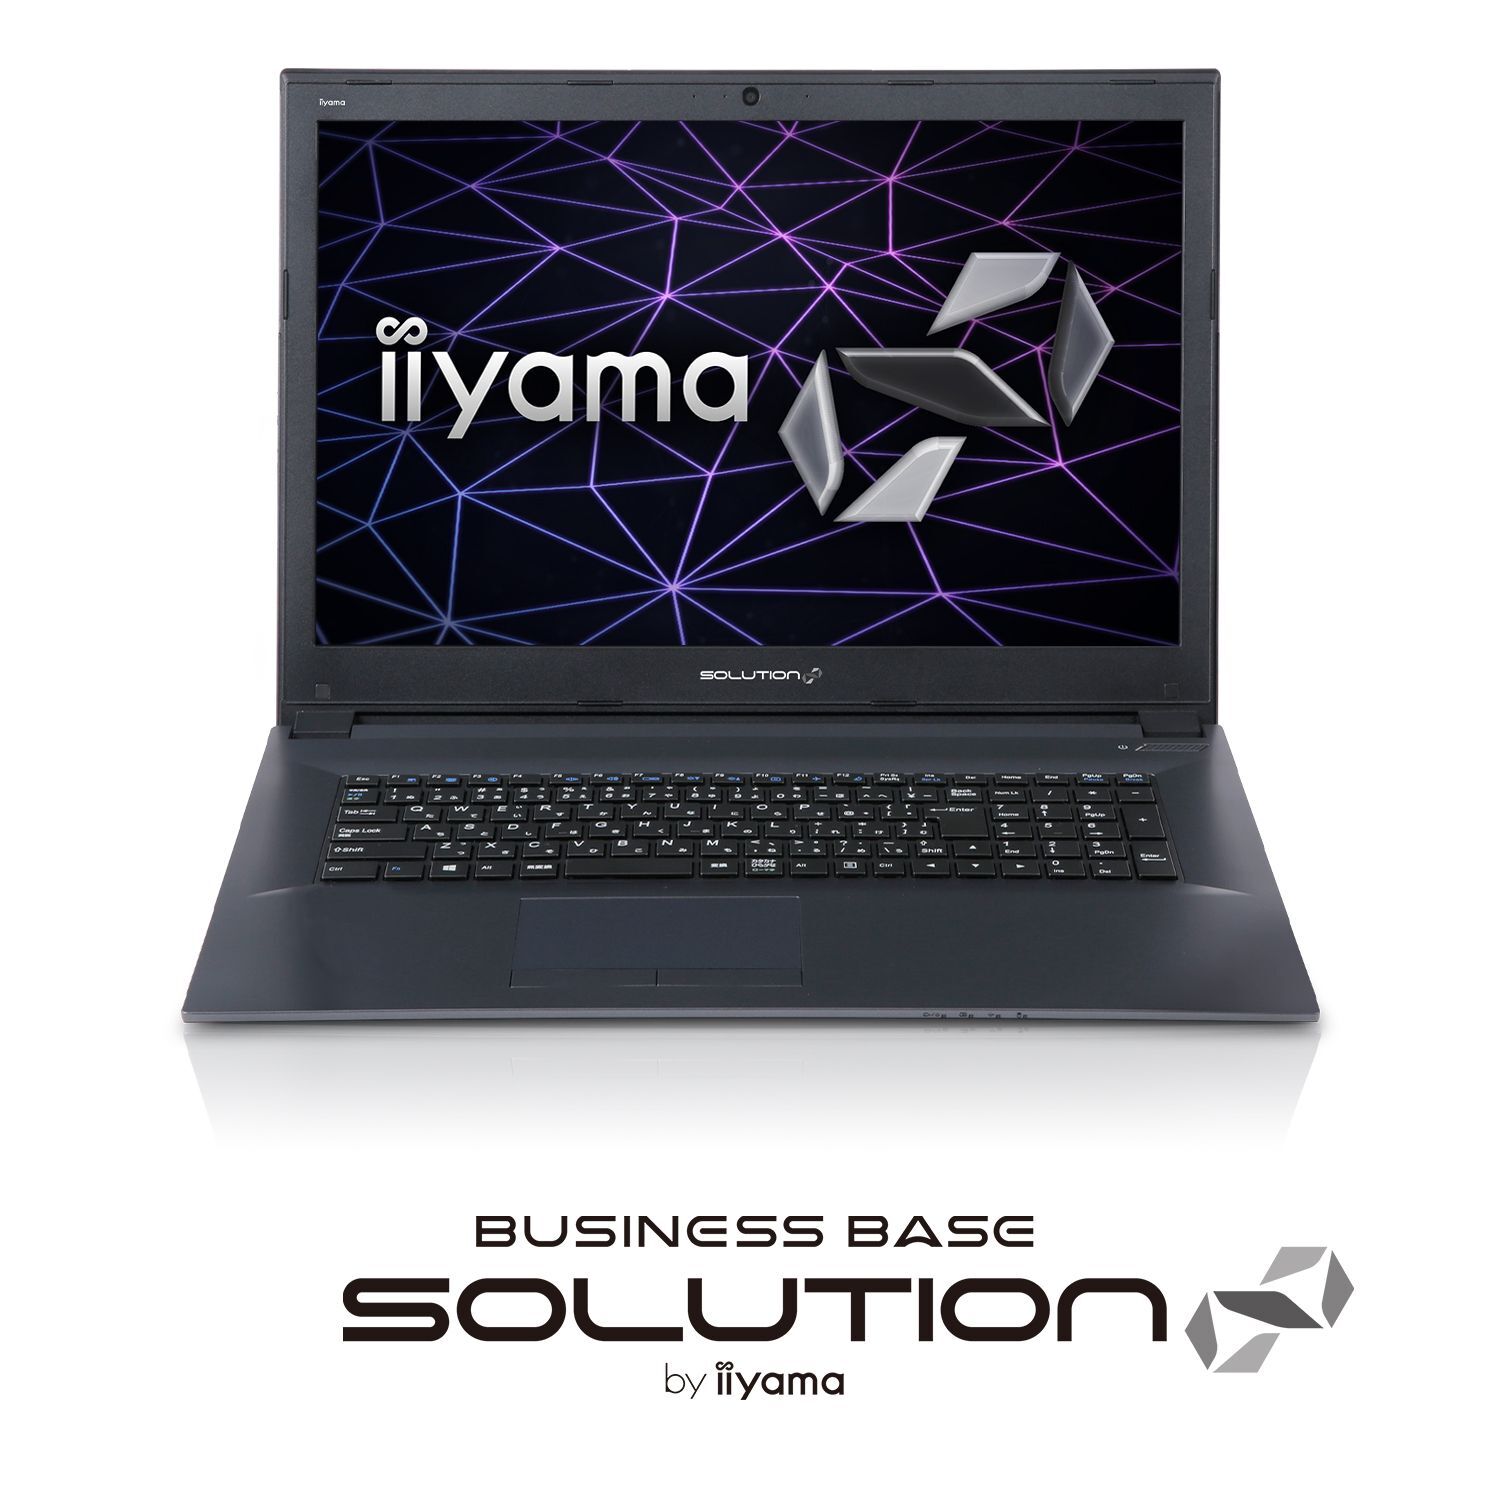 iiyama ノート パソコン PC i7 SSD 搭載 ワイヤレスマウス付き